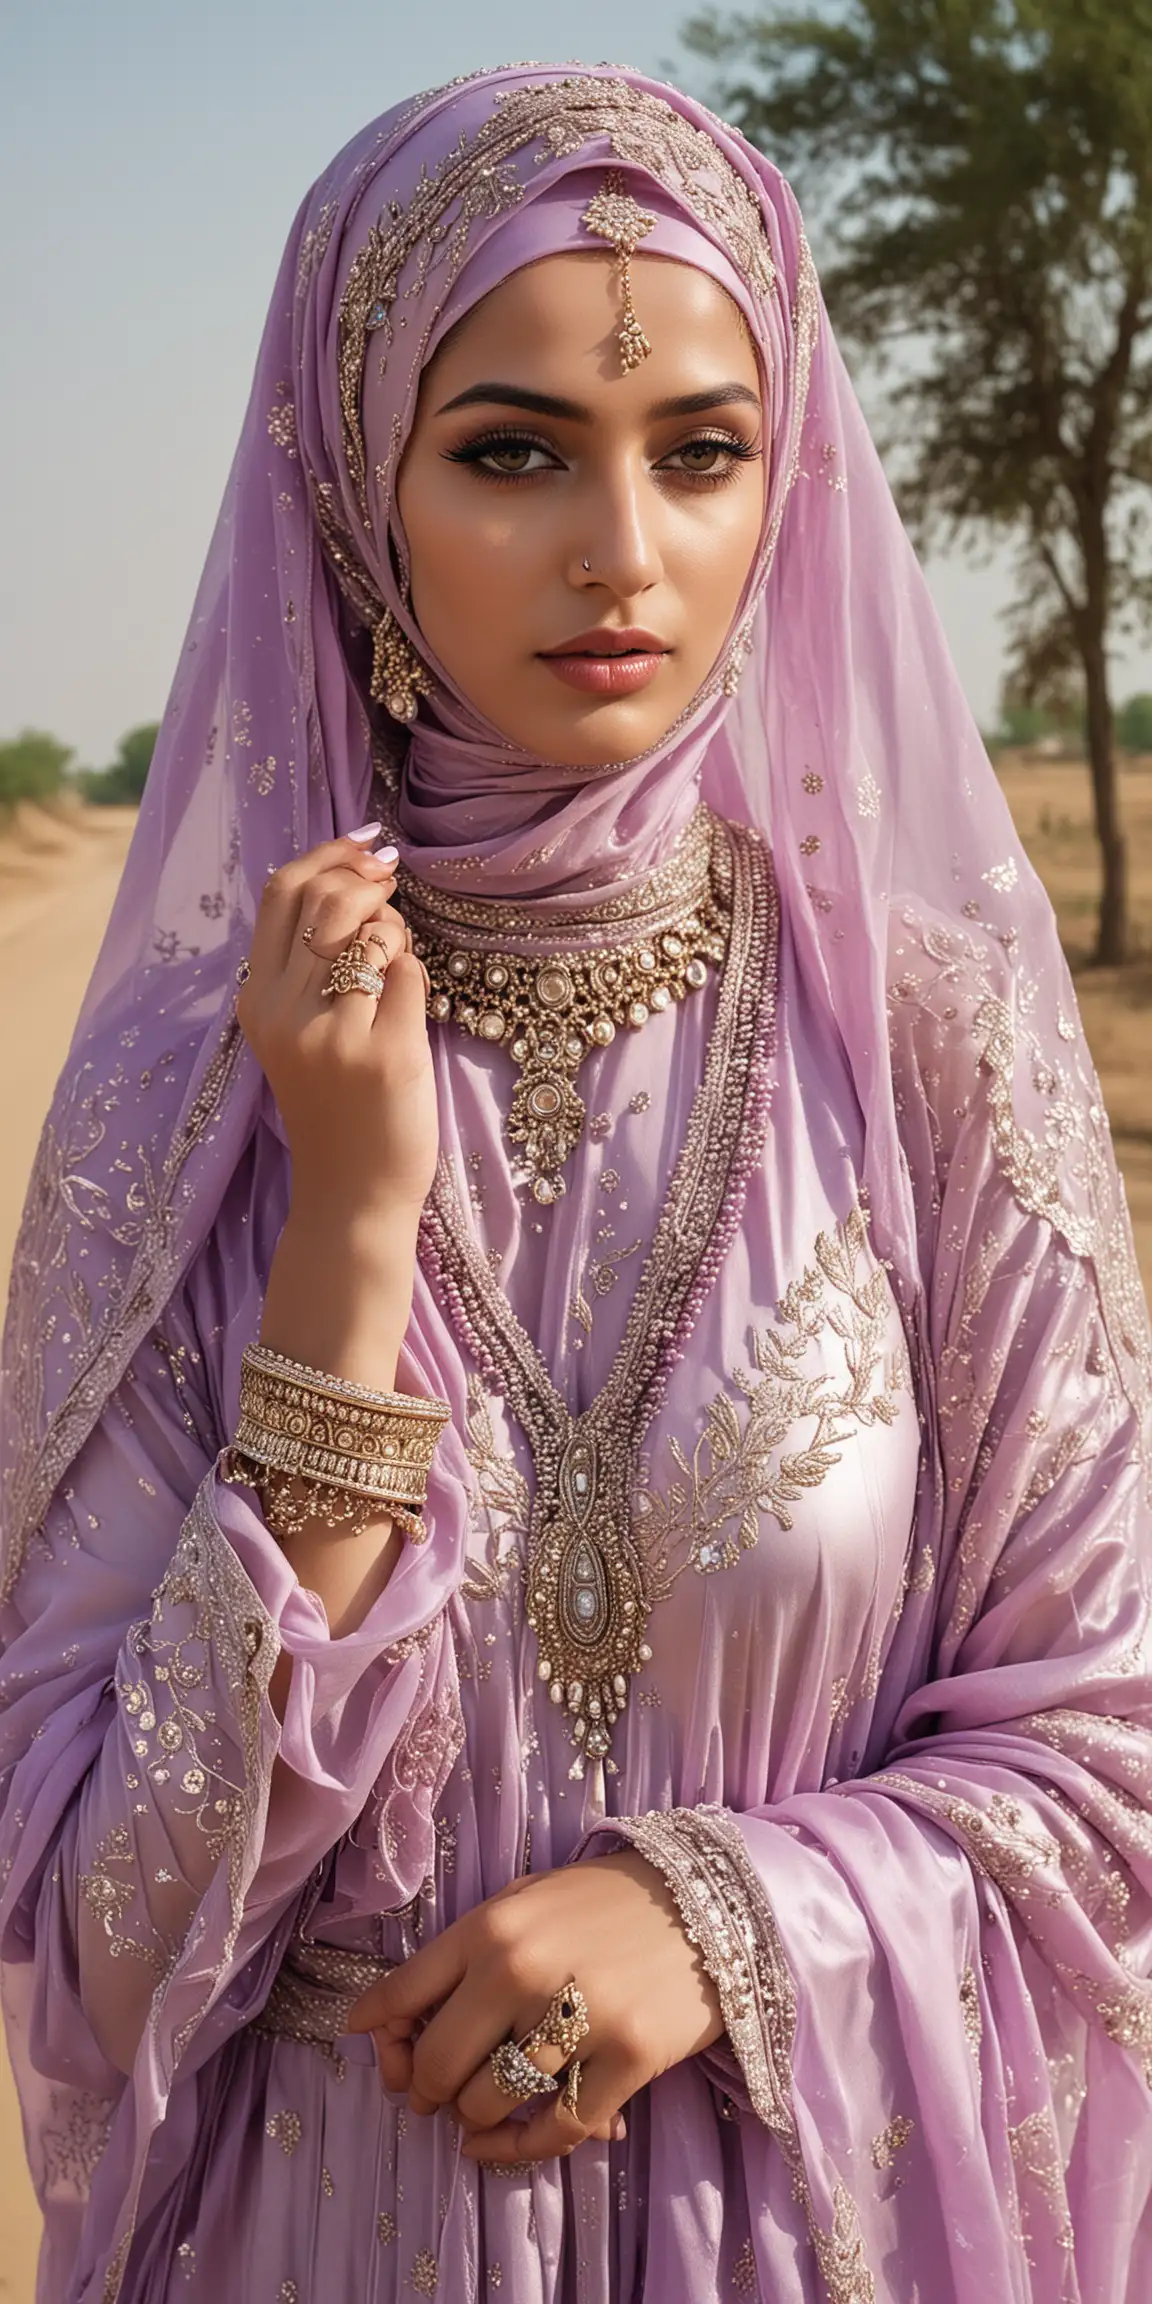 Lavender Silk Niqabi Arab Bride at Rural Haryana Bus Stop